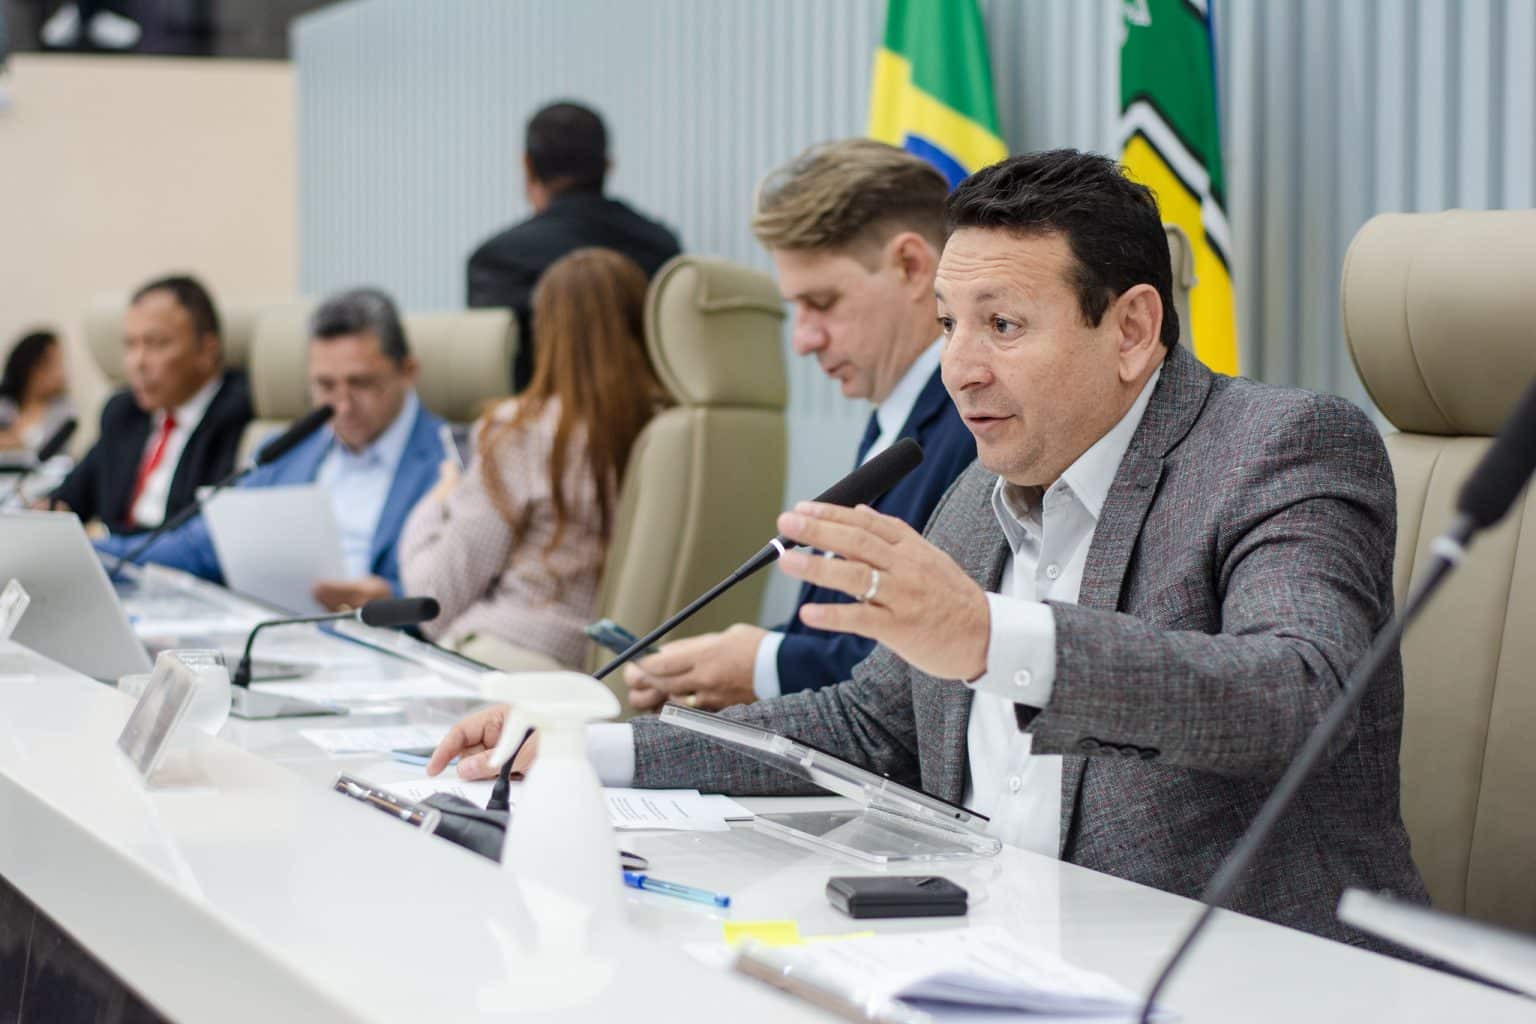 Deputado que propôs CPI contra Equatorial vai à Brasília buscar apoio para barrar aumento de 44,4% na tarifa de energia do Amapá